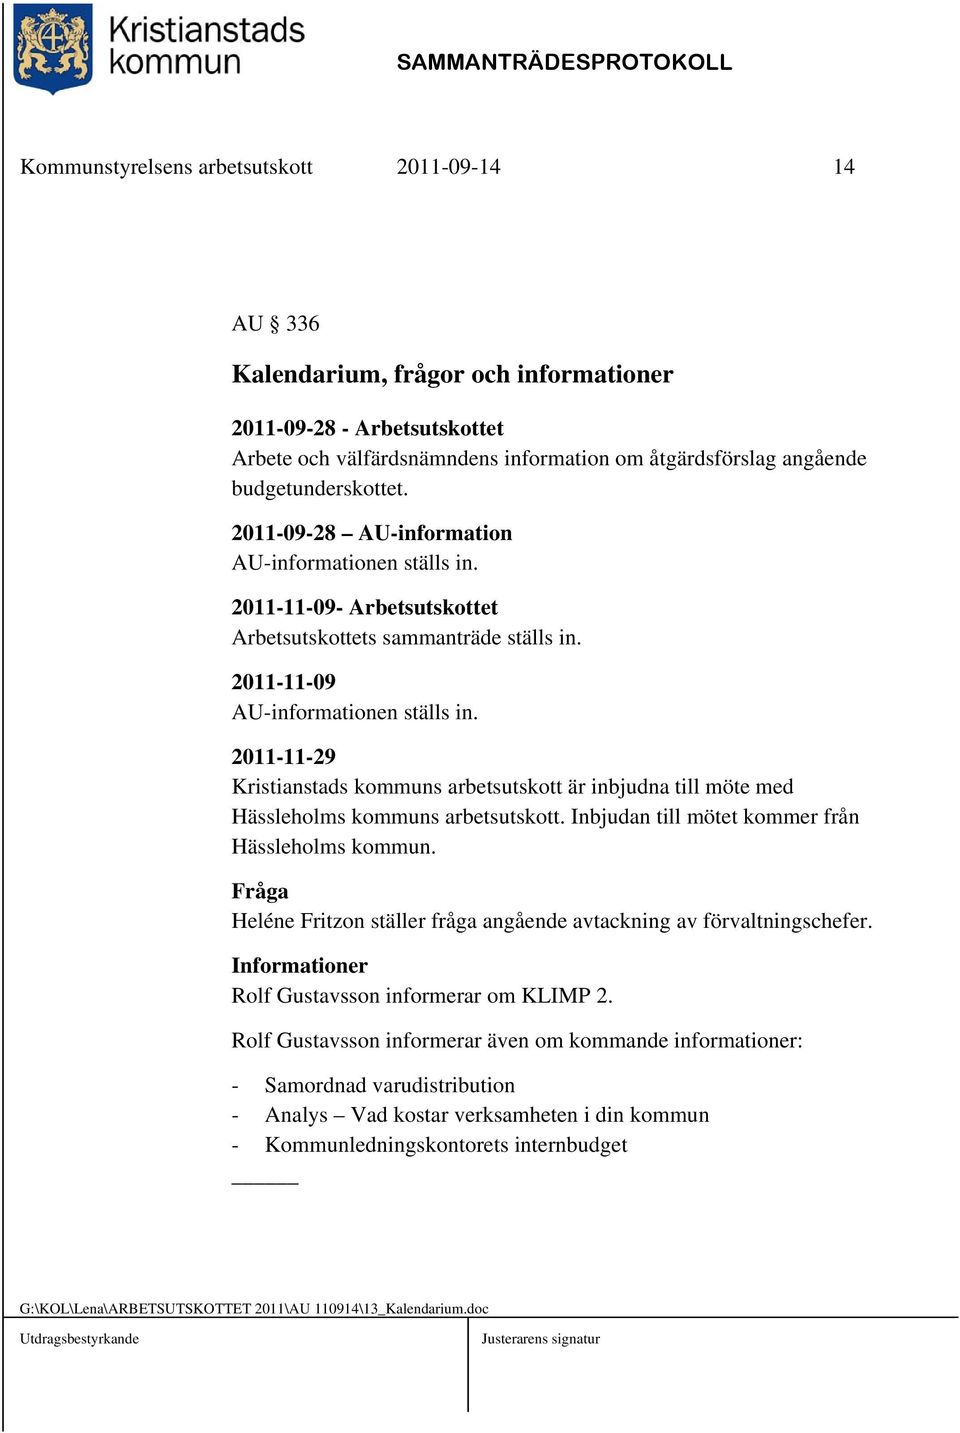 2011-11-29 Kristianstads kommuns arbetsutskott är inbjudna till möte med Hässleholms kommuns arbetsutskott. Inbjudan till mötet kommer från Hässleholms kommun.